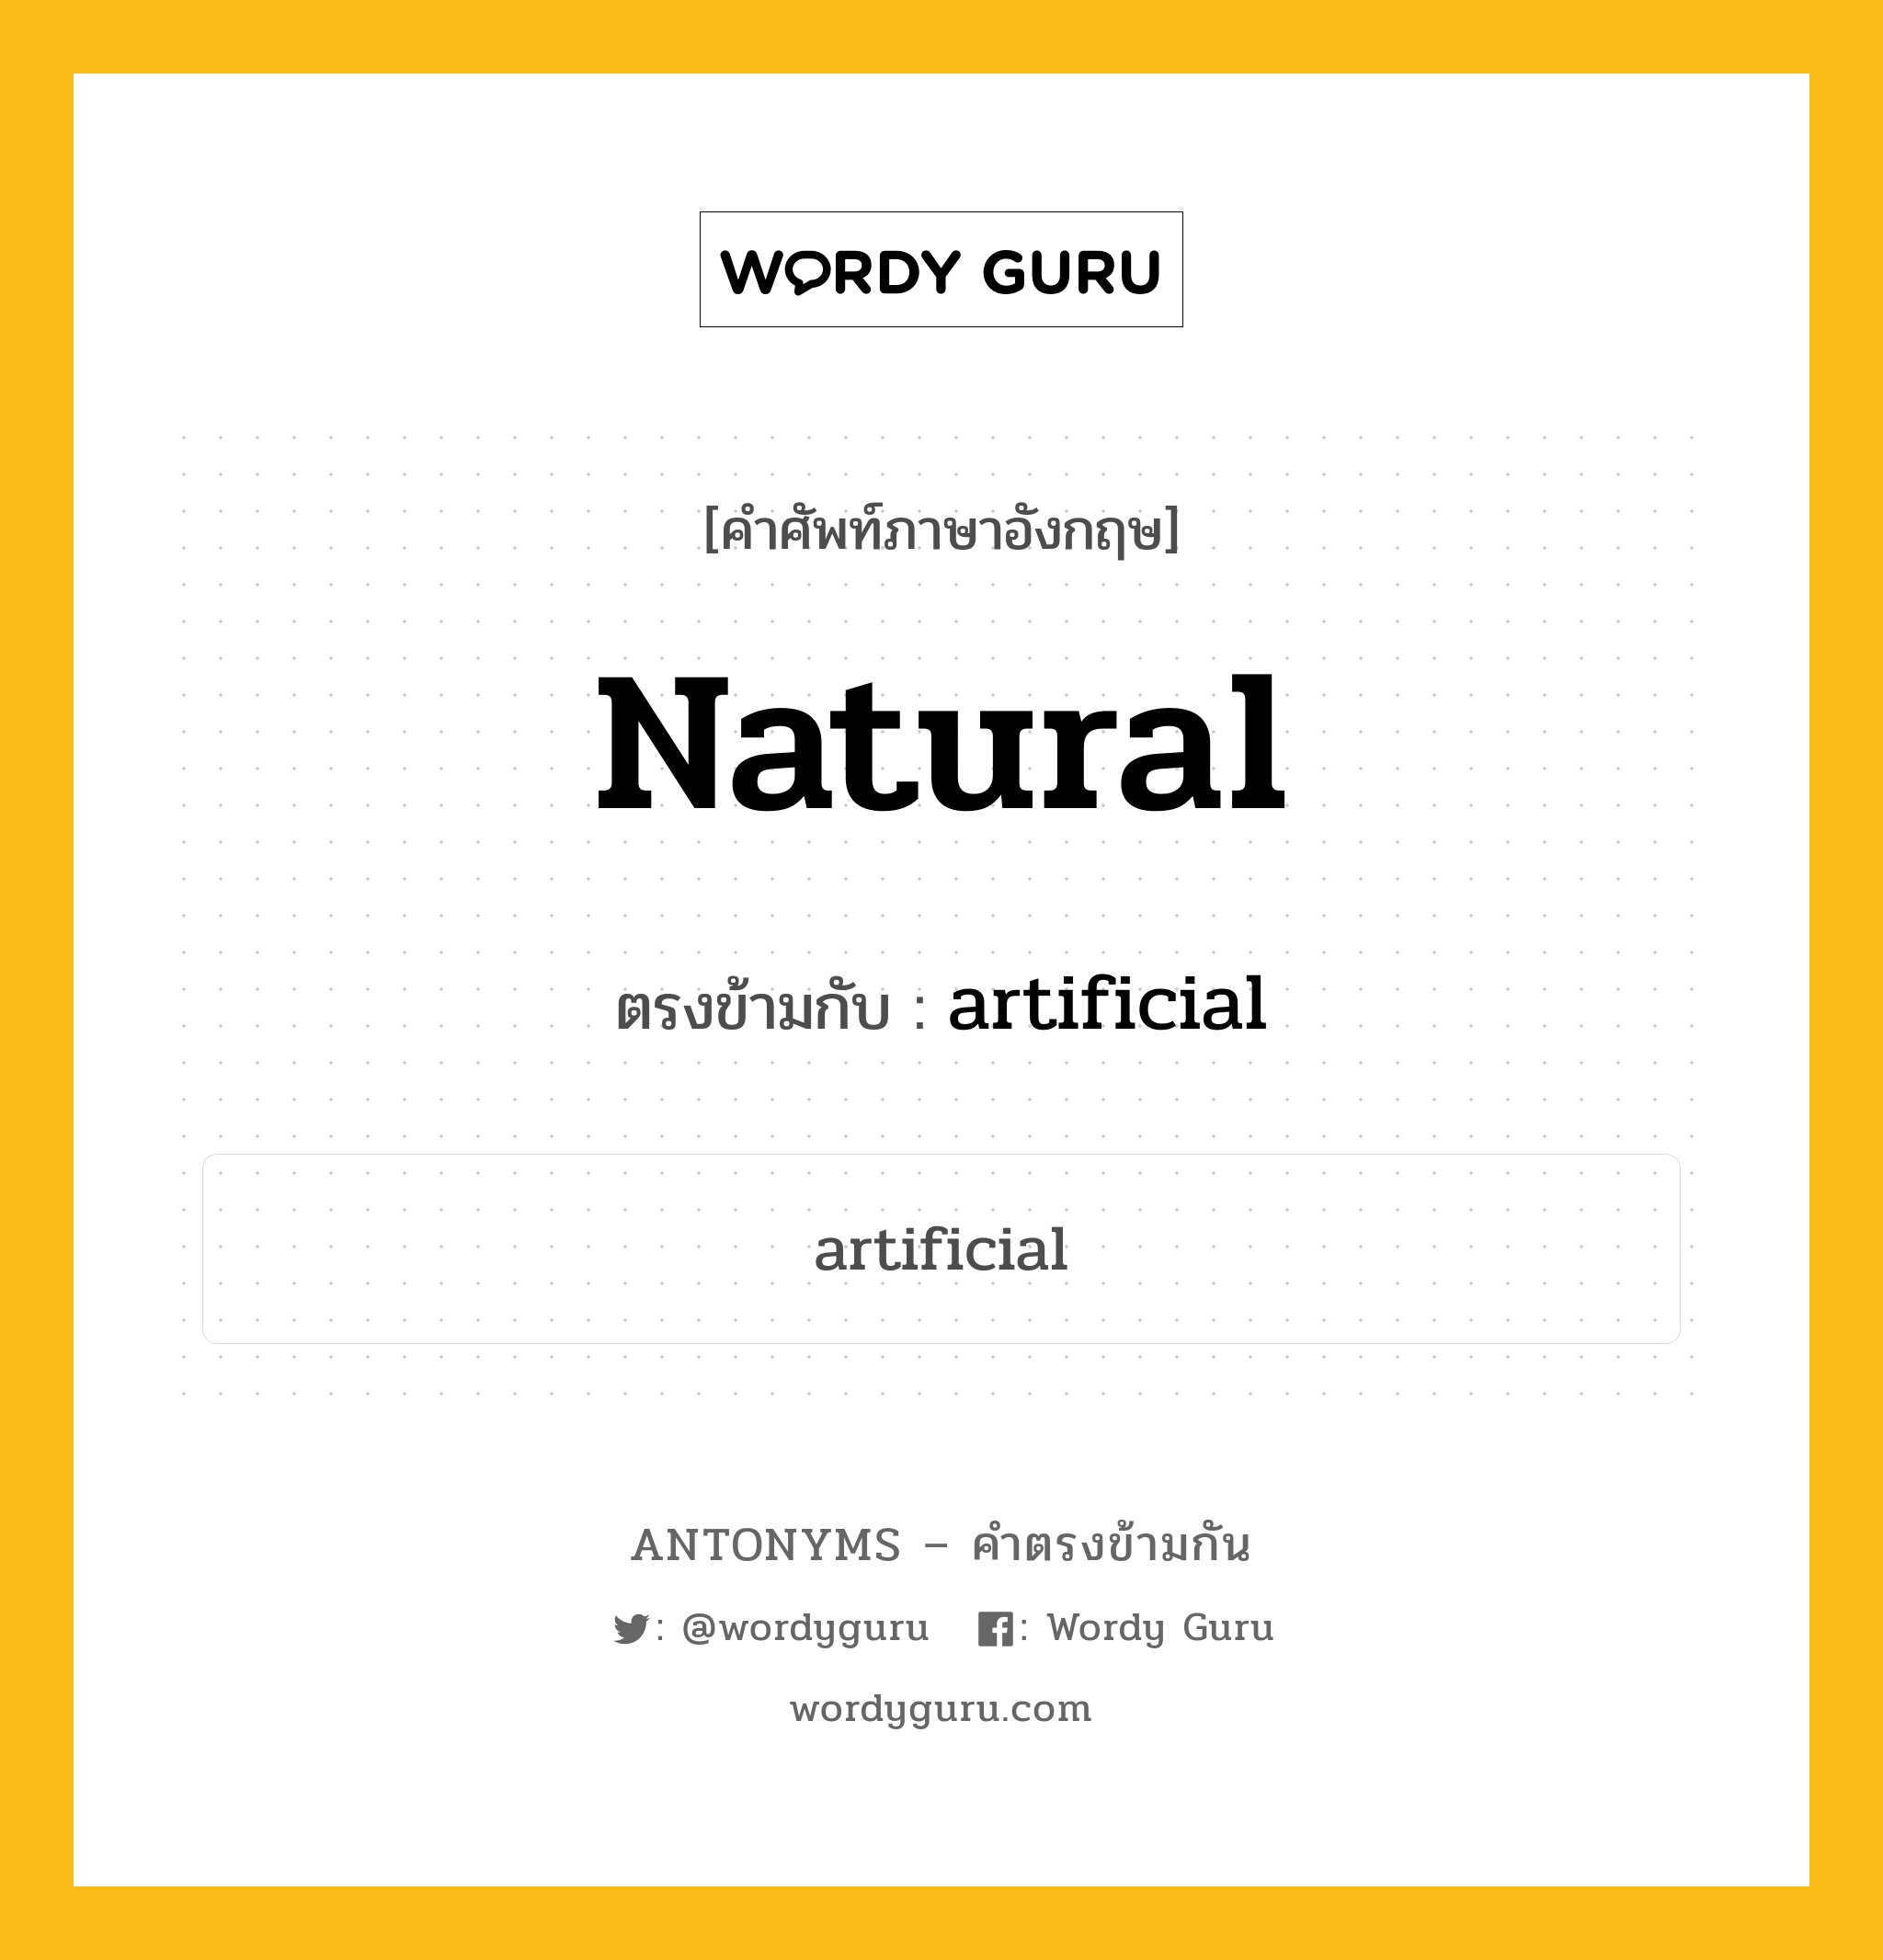 natural เป็นคำตรงข้ามกับคำไหนบ้าง?, คำศัพท์ภาษาอังกฤษ natural ตรงข้ามกับ artificial หมวด artificial